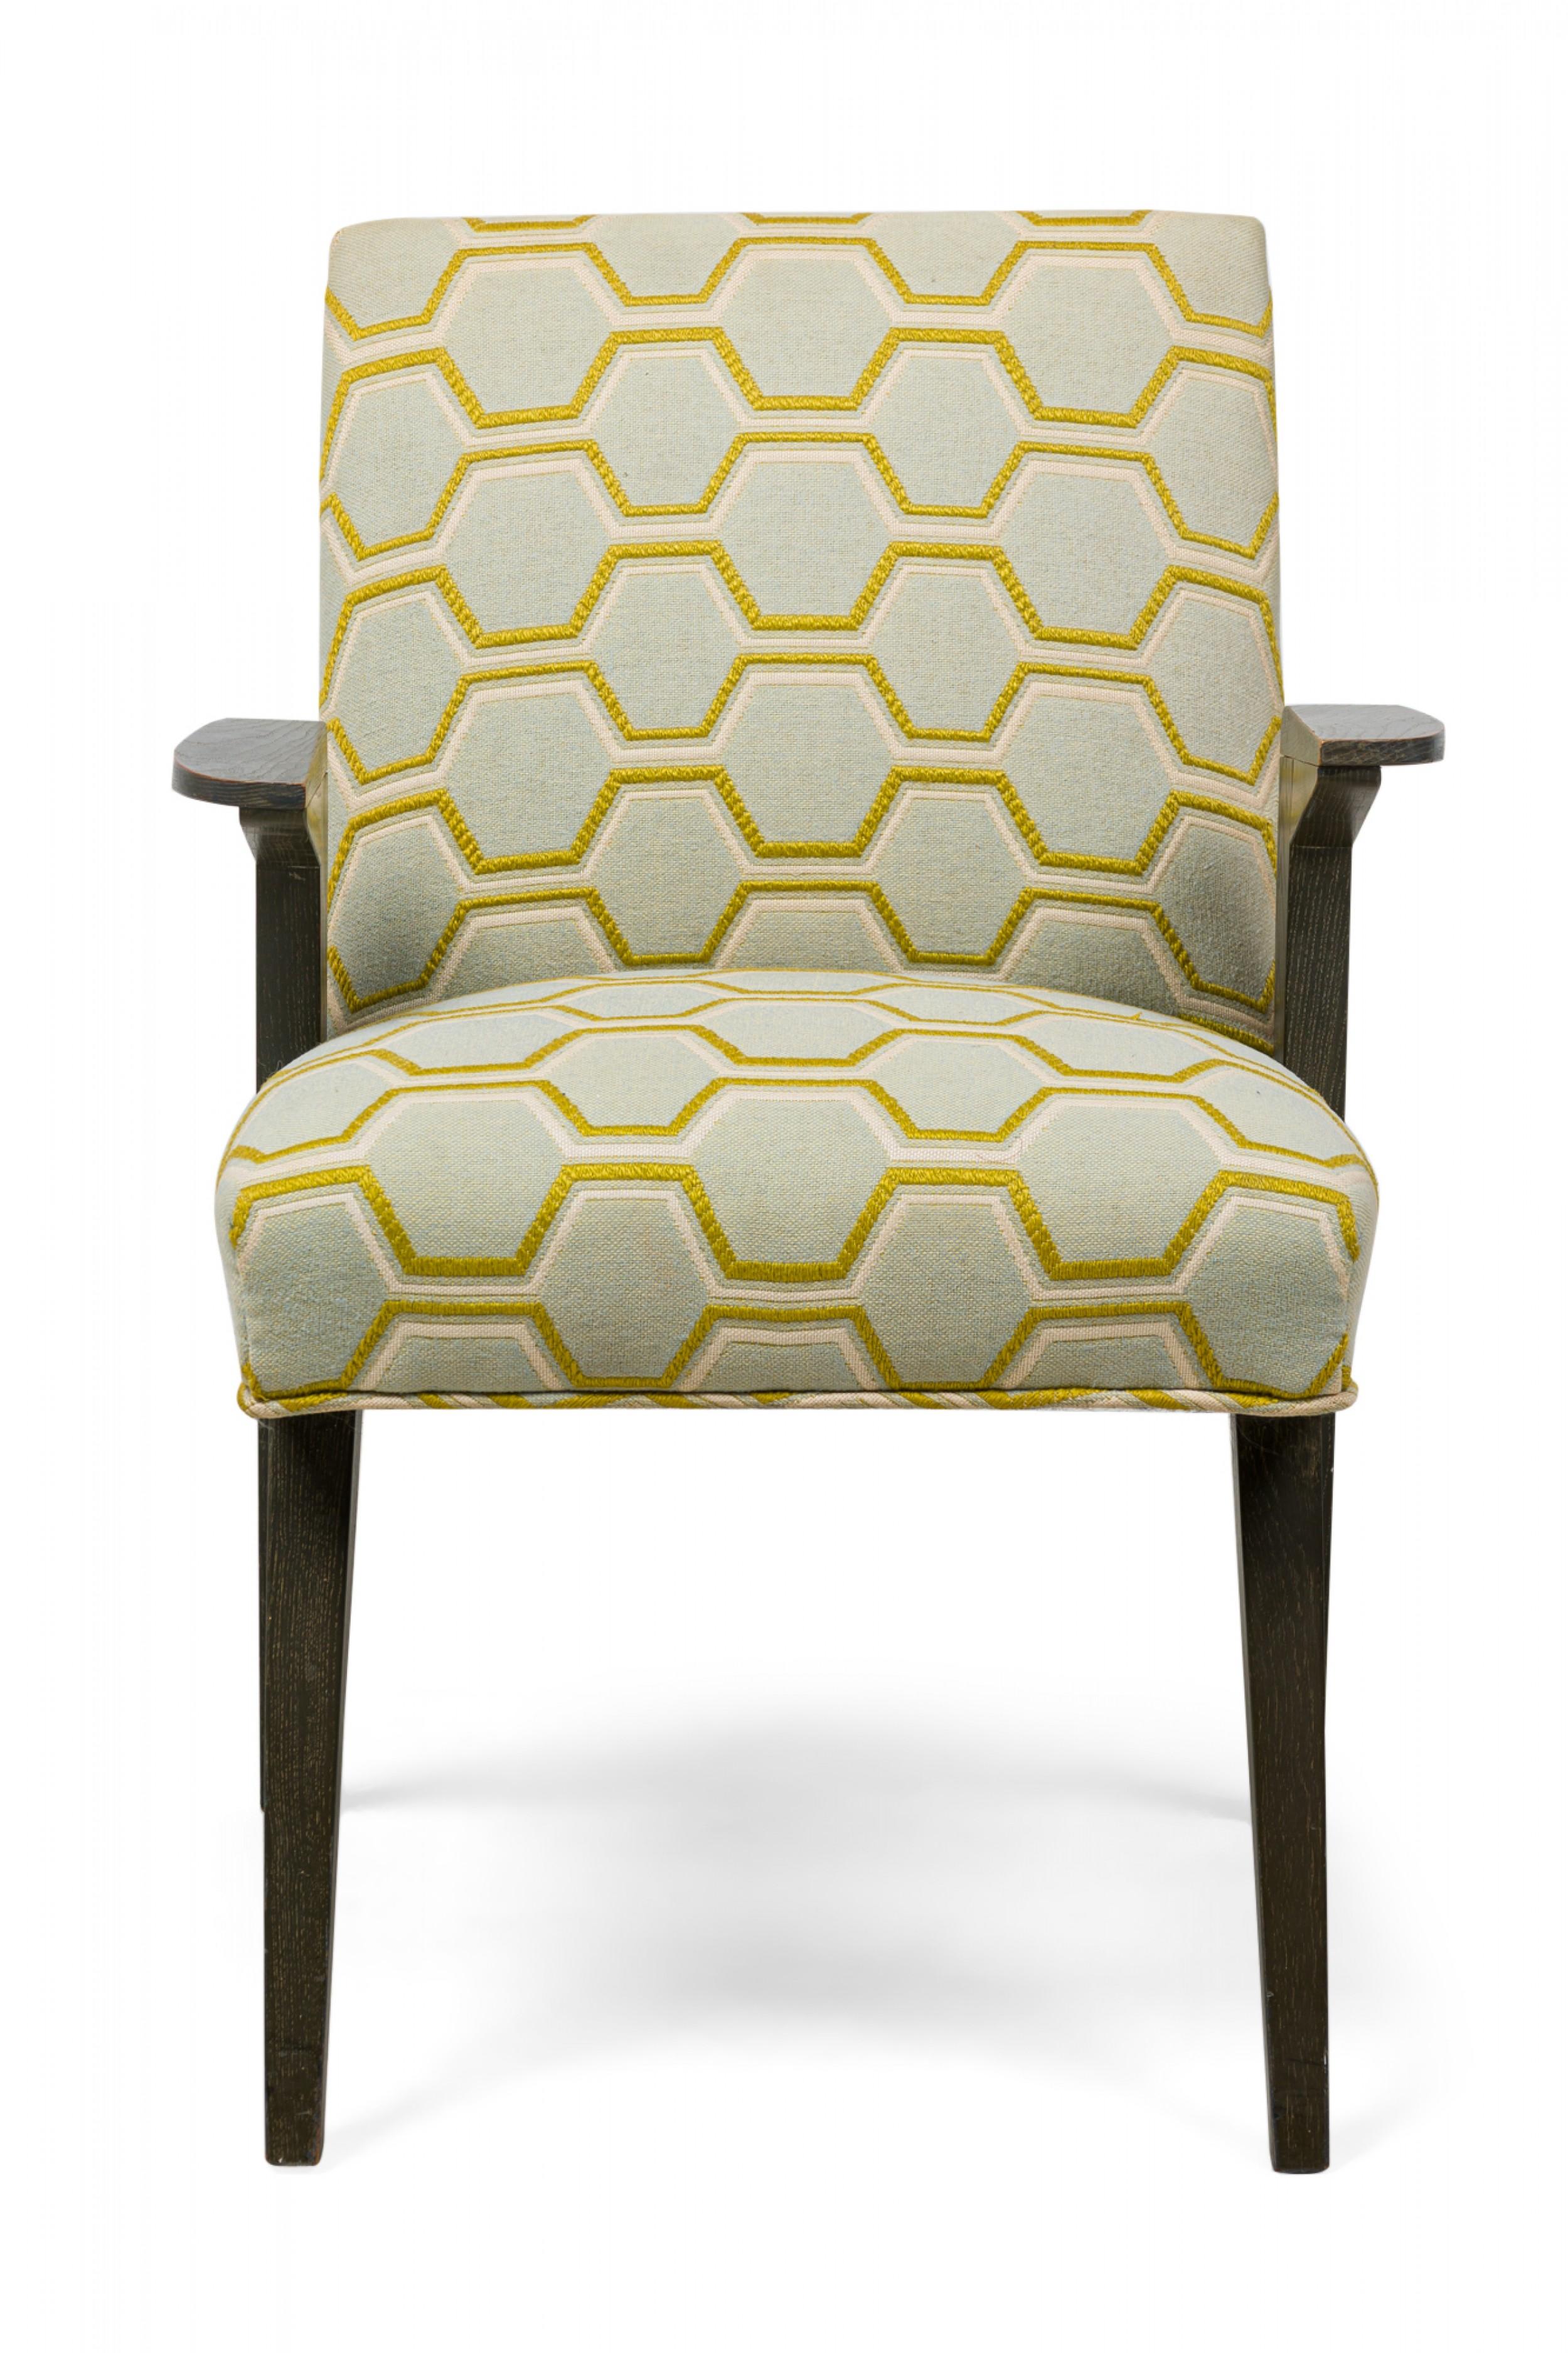 Ensemble de 6 chaises de salle à manger en chêne cérusé gris mat, 2 fauteuils et 4 chaises d'appoint du milieu du siècle dernier (années 1950). Le dossier et l'assise sont recouverts d'un motif géométrique texturé avec des garnitures dorées, les